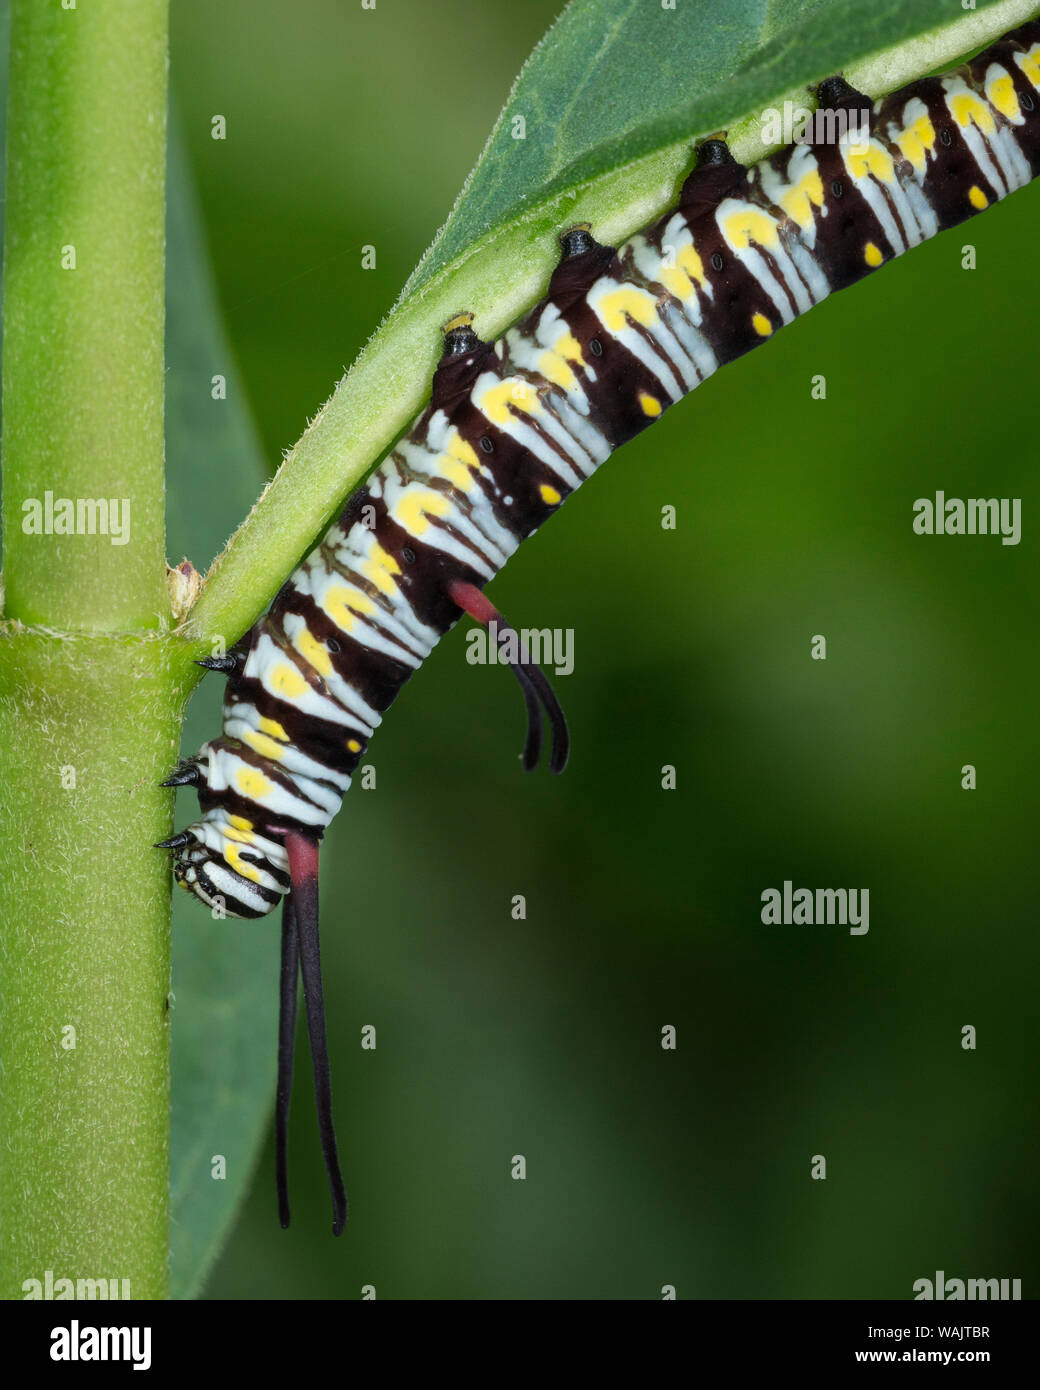 Queen larvae or caterpillar, Danaus gilippus, Florida Stock Photo